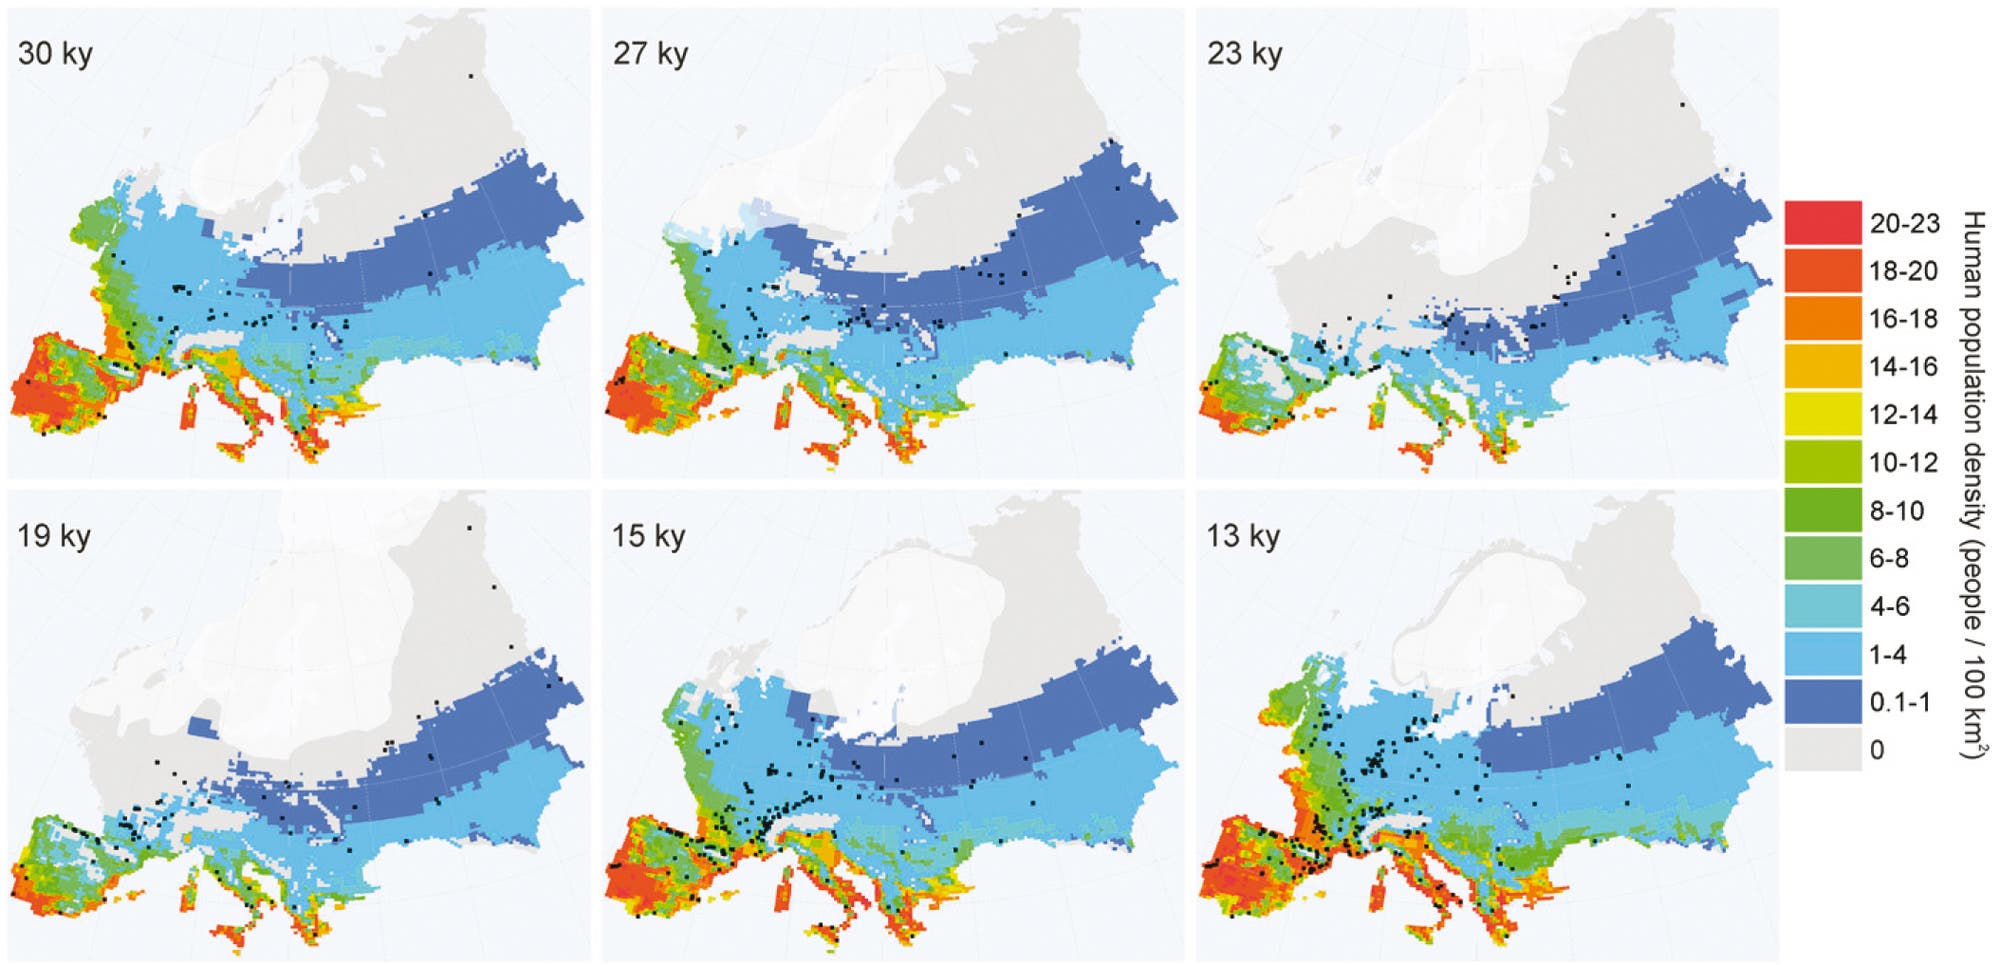 Bevölkerungsentwicklung in der Eiszeit